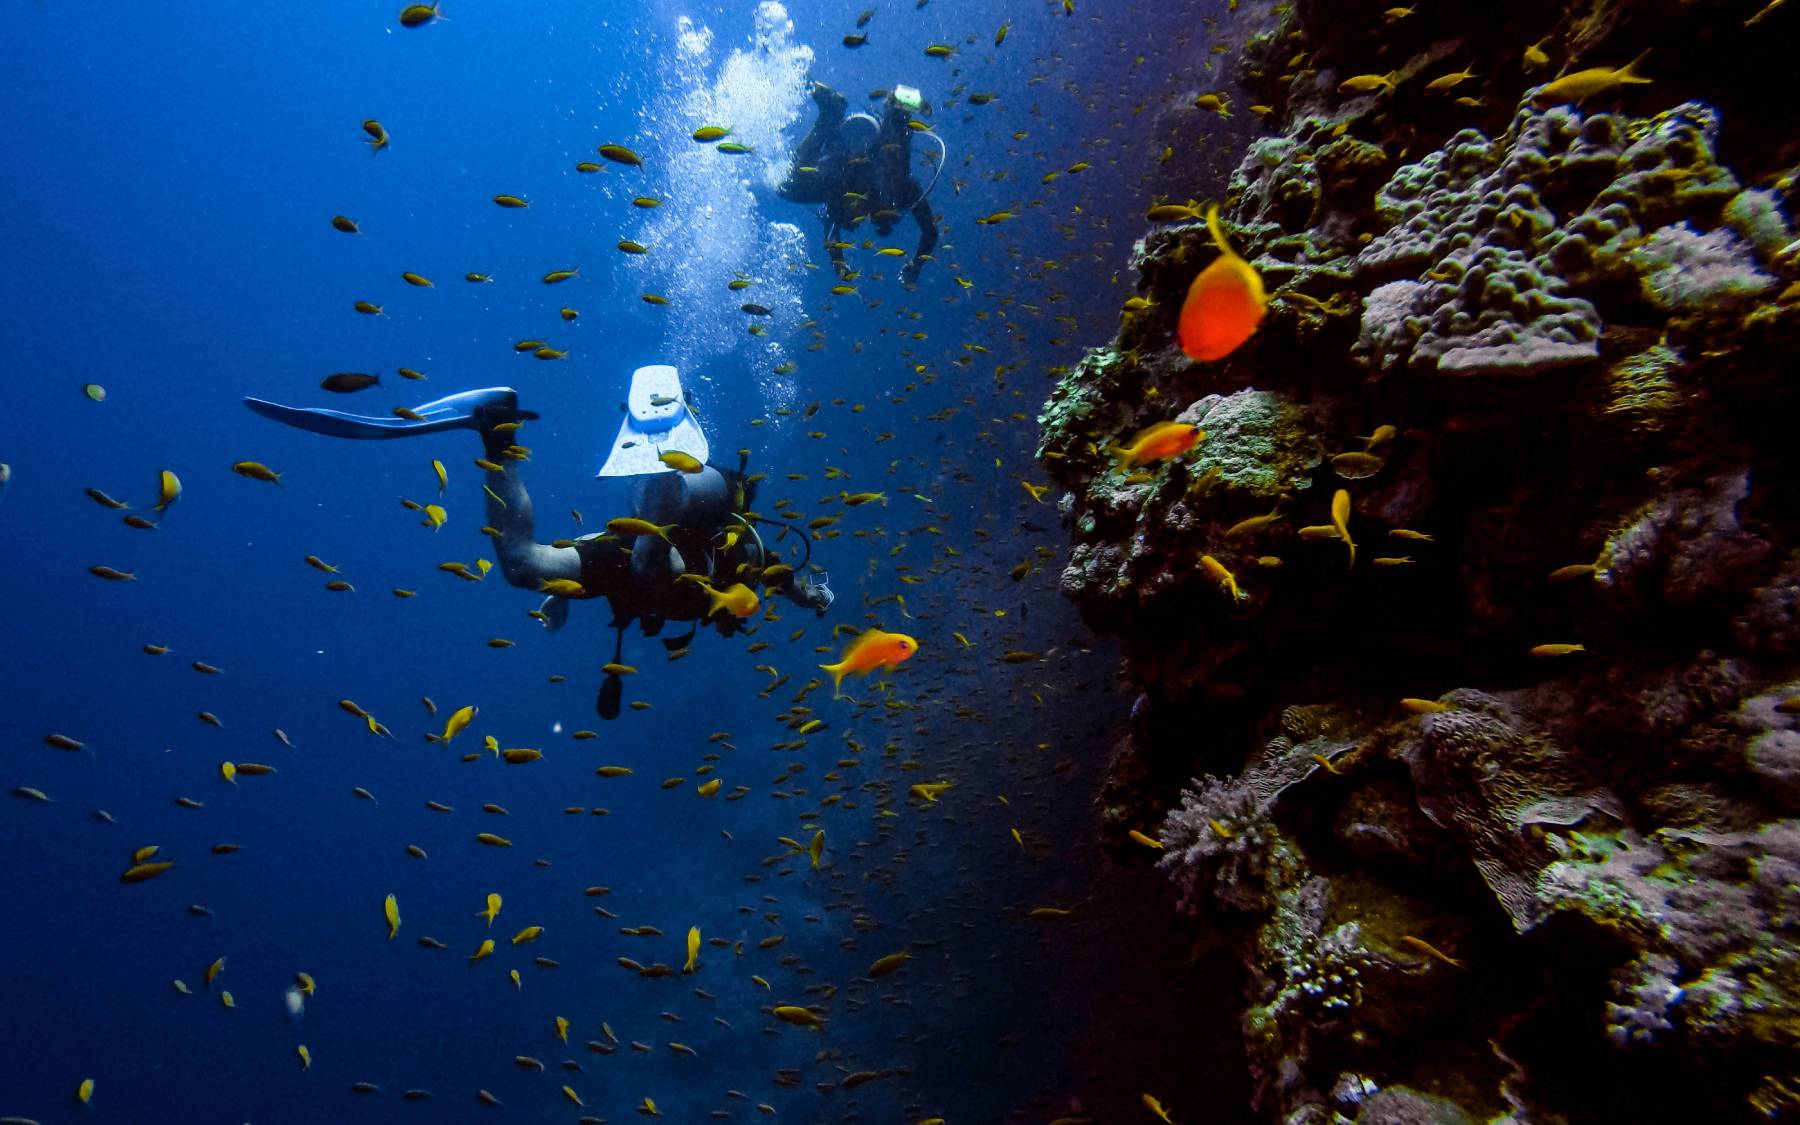 Πού μπορούμε να κάνουμε Scuba Diving στην Αττική;